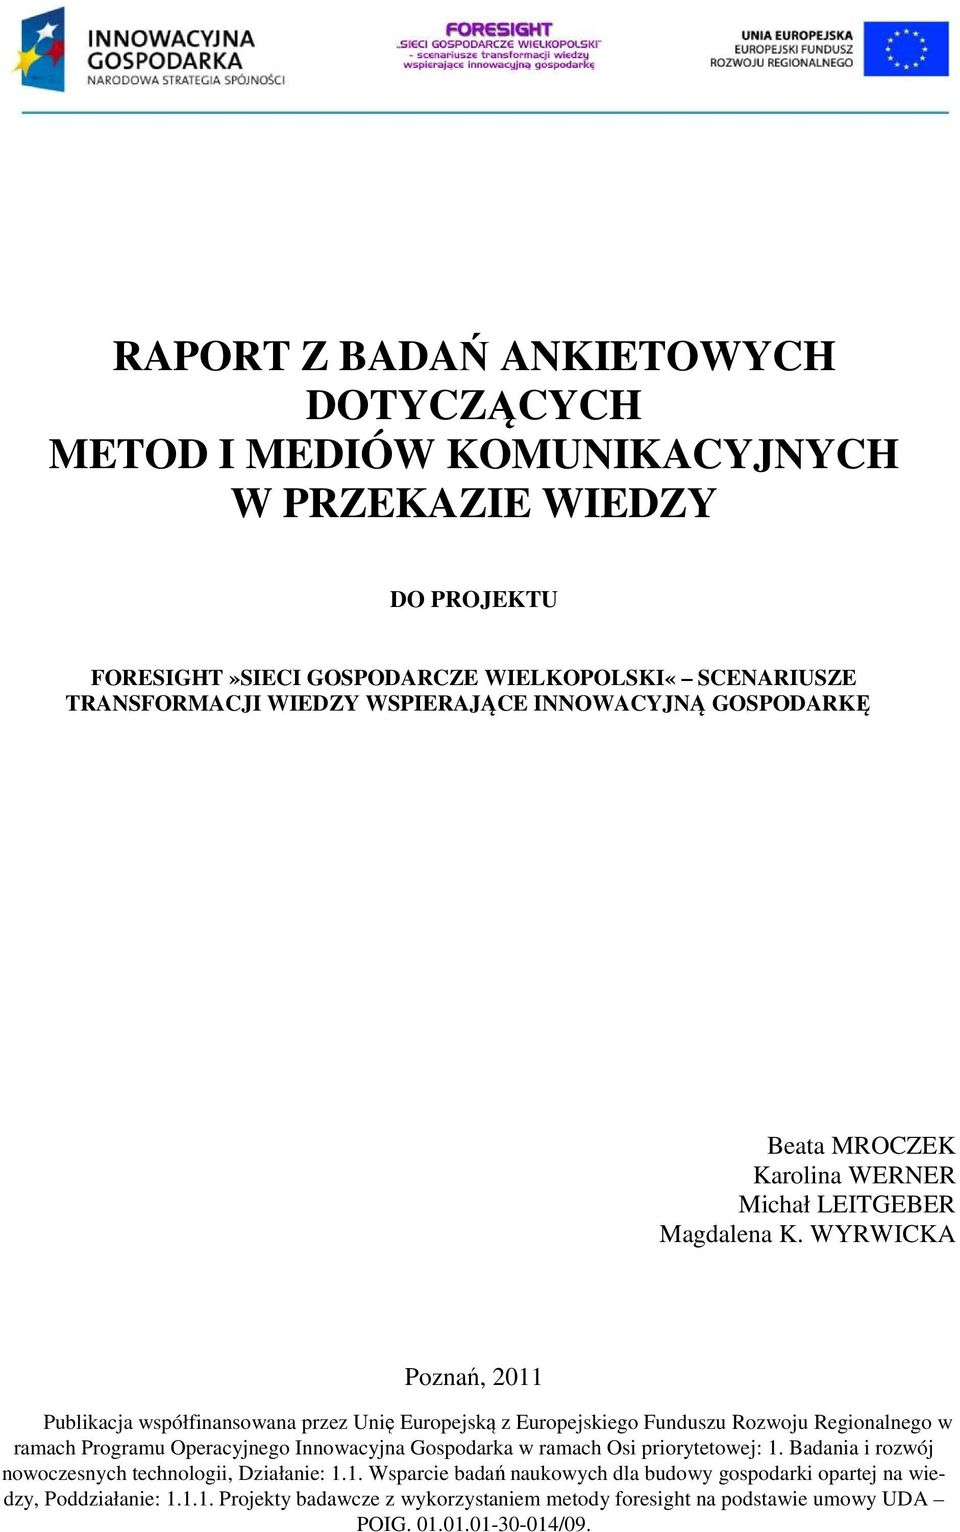 WYRWICKA Poznań, 2011 Publikacja współfinansowana przez Unię Europejską z Europejskiego Funduszu Rozwoju Regionalnego w ramach Programu Operacyjnego Innowacyjna Gospodarka w